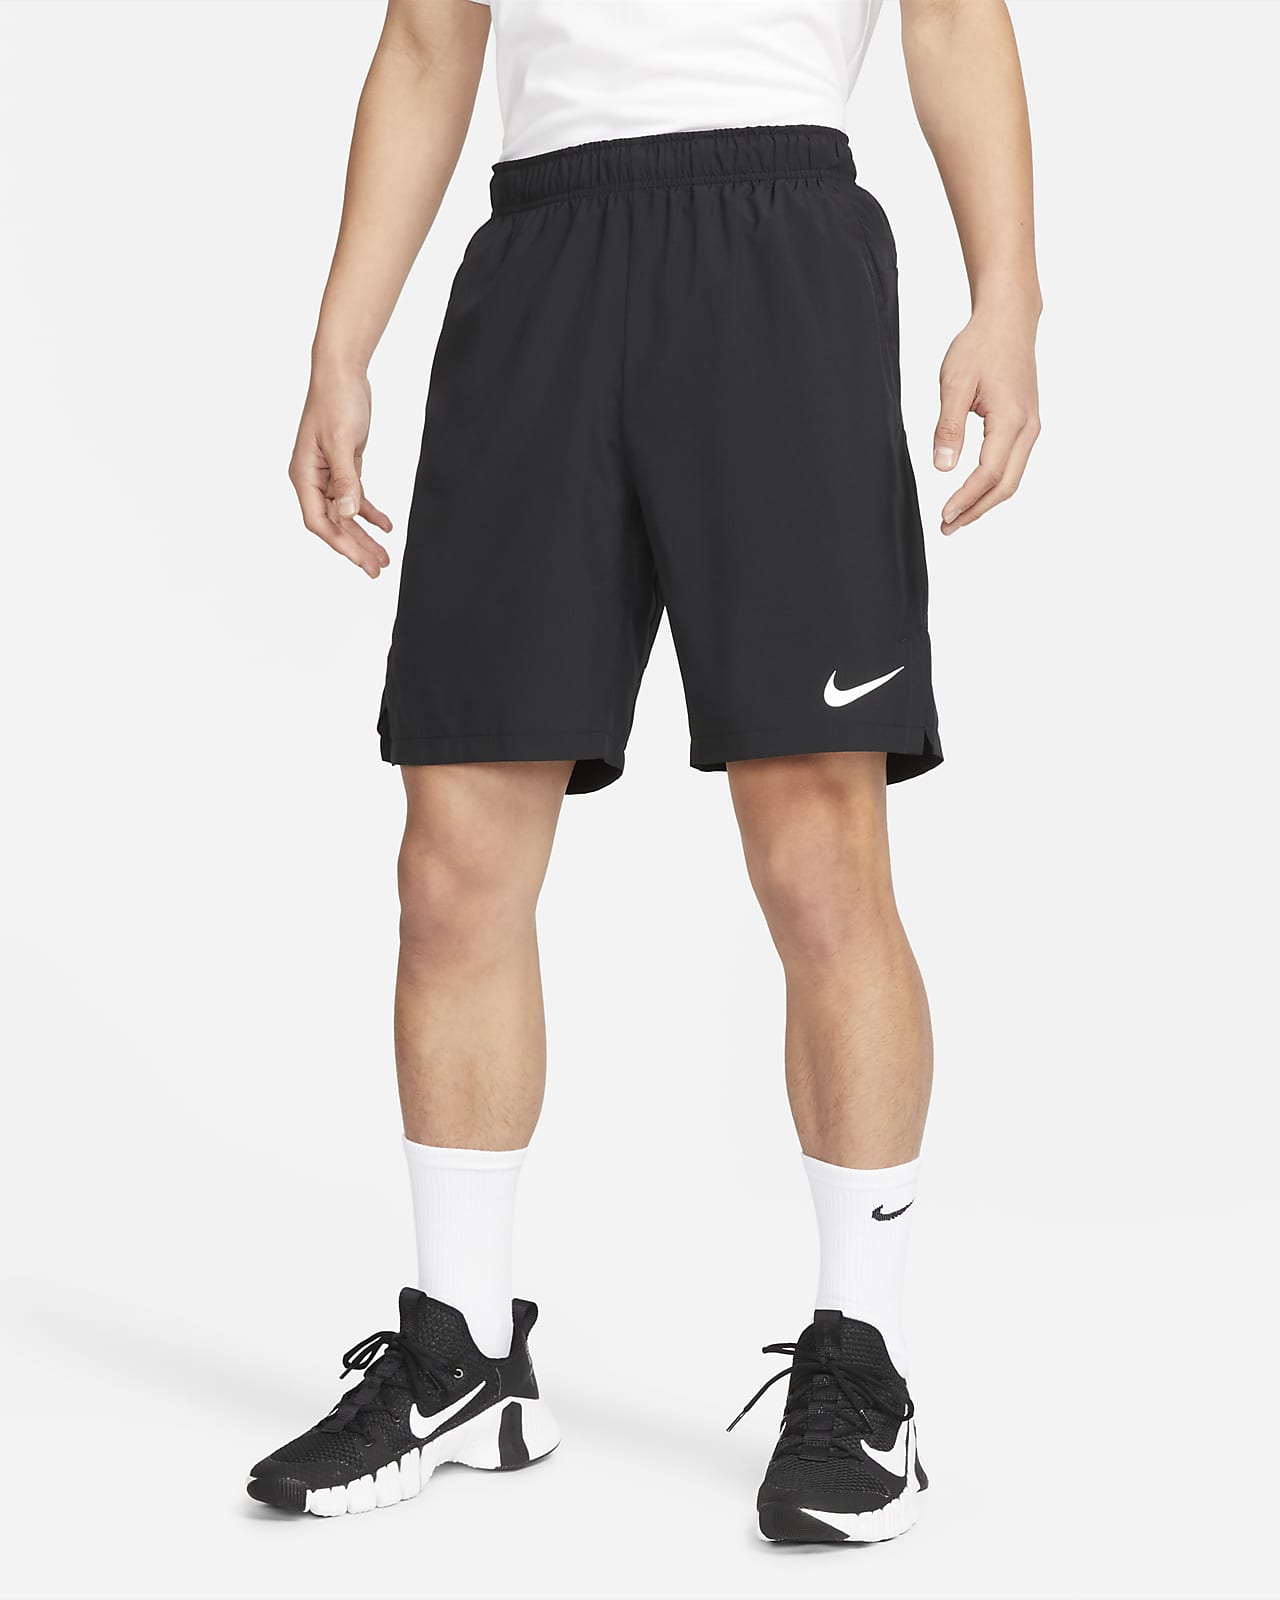 กางเกงเทรนนิ่งขาสั้น 9 นิ้วแบบทอผู้ชาย Nike Dri-FIT